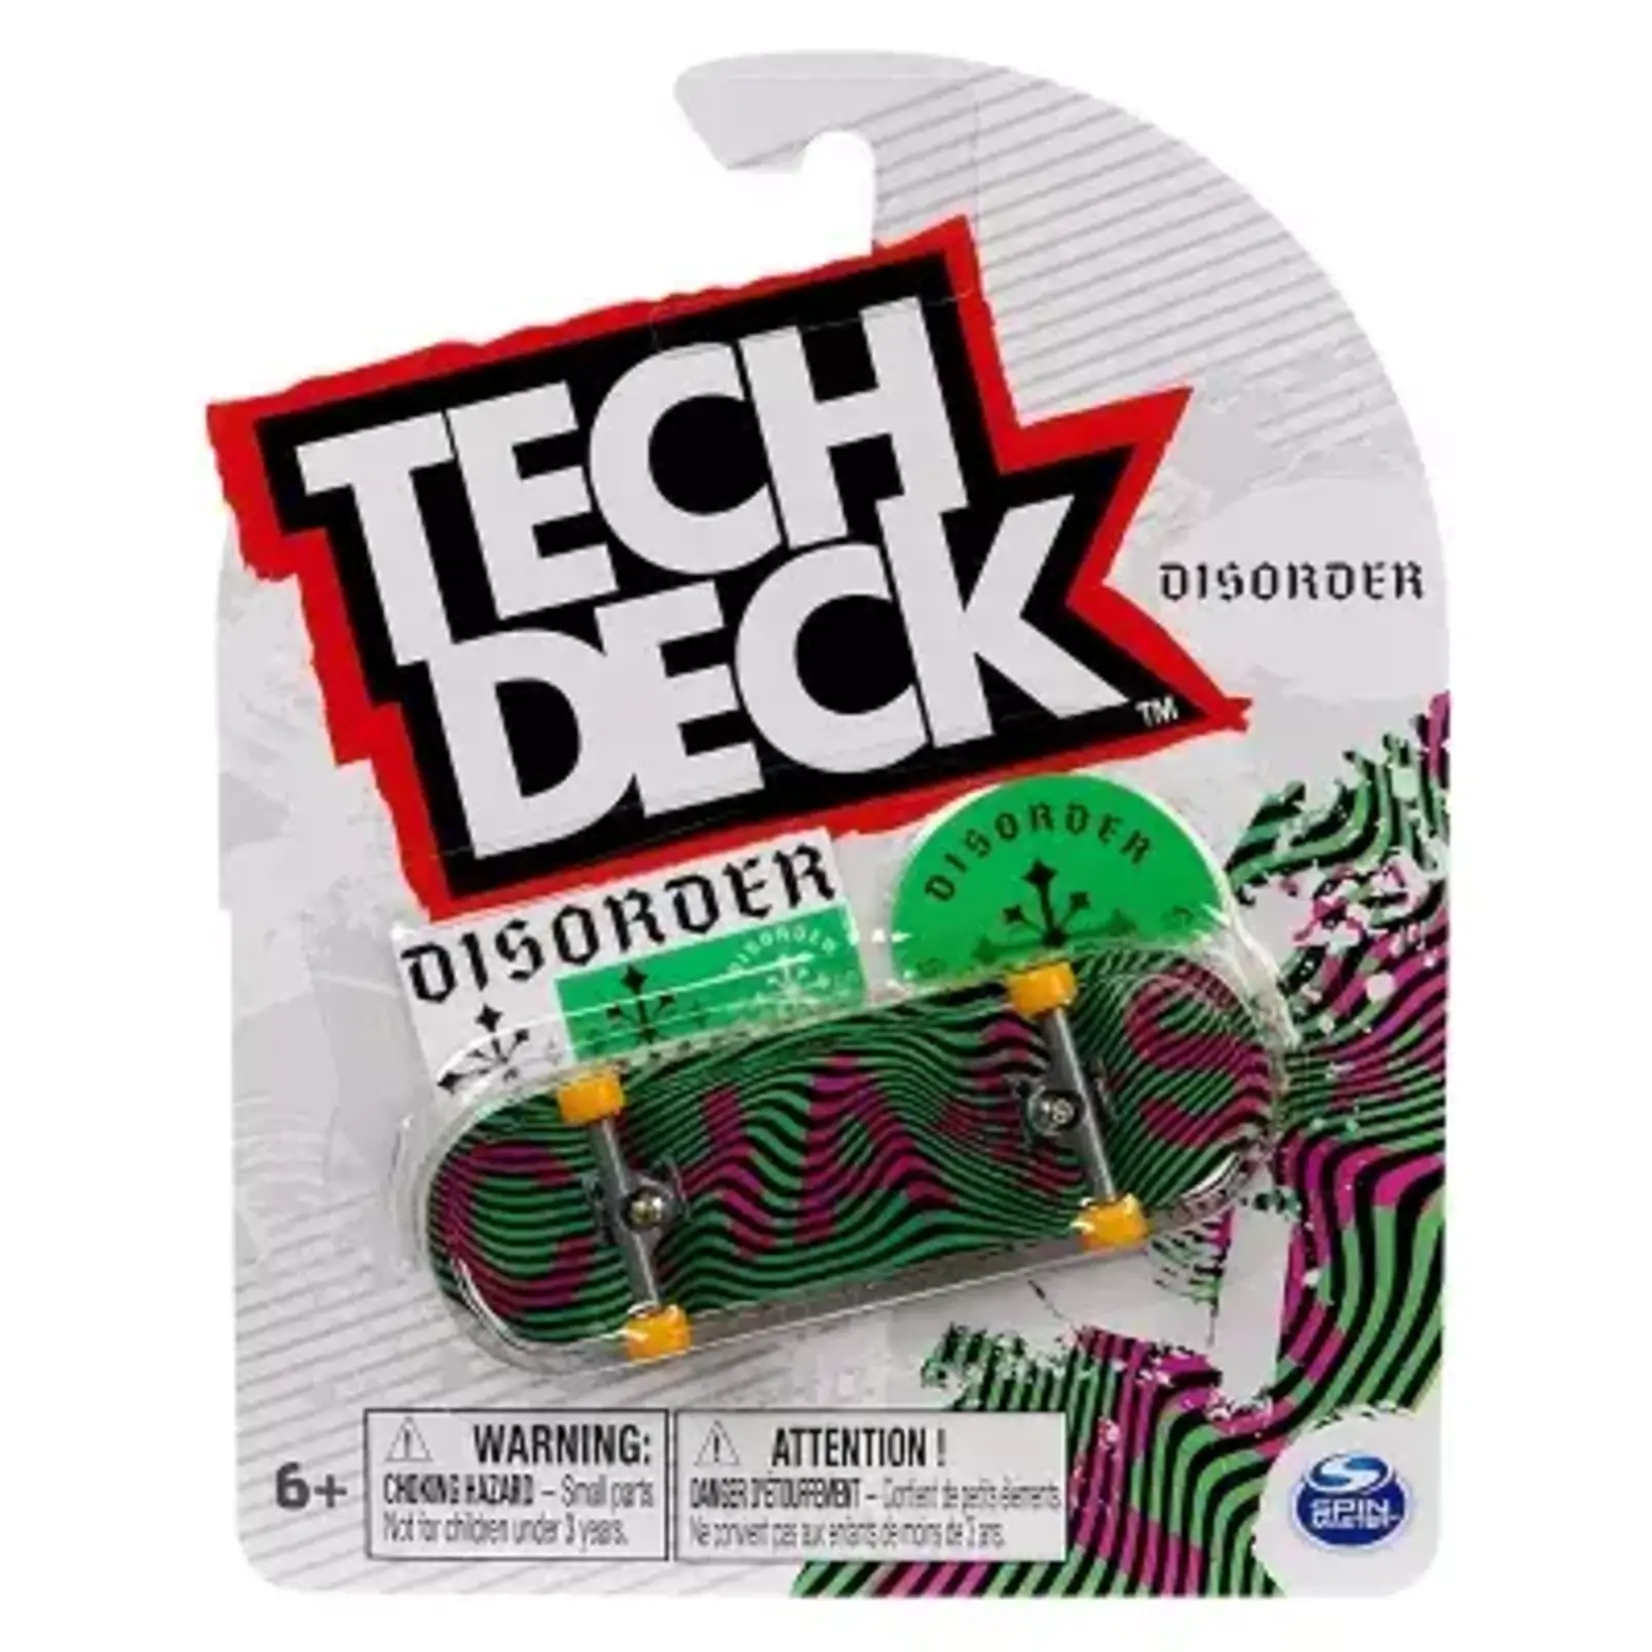 Tech Deck Tech Deck Fingerboard Assortment